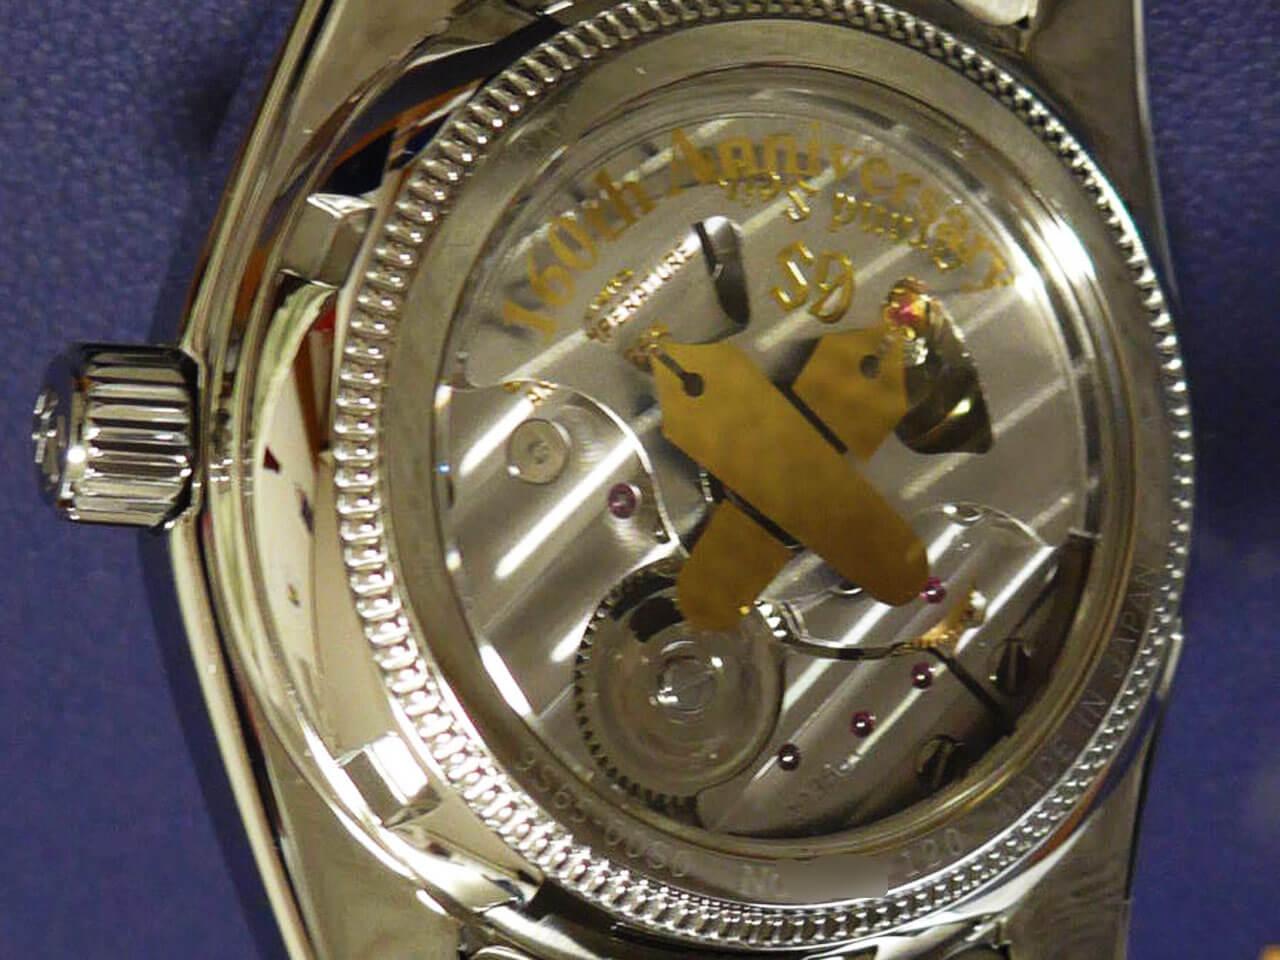 毎日激安特売で 営業中です 新品未使用 慶應義塾大学 腕時計 記念グッズ kids-nurie.com